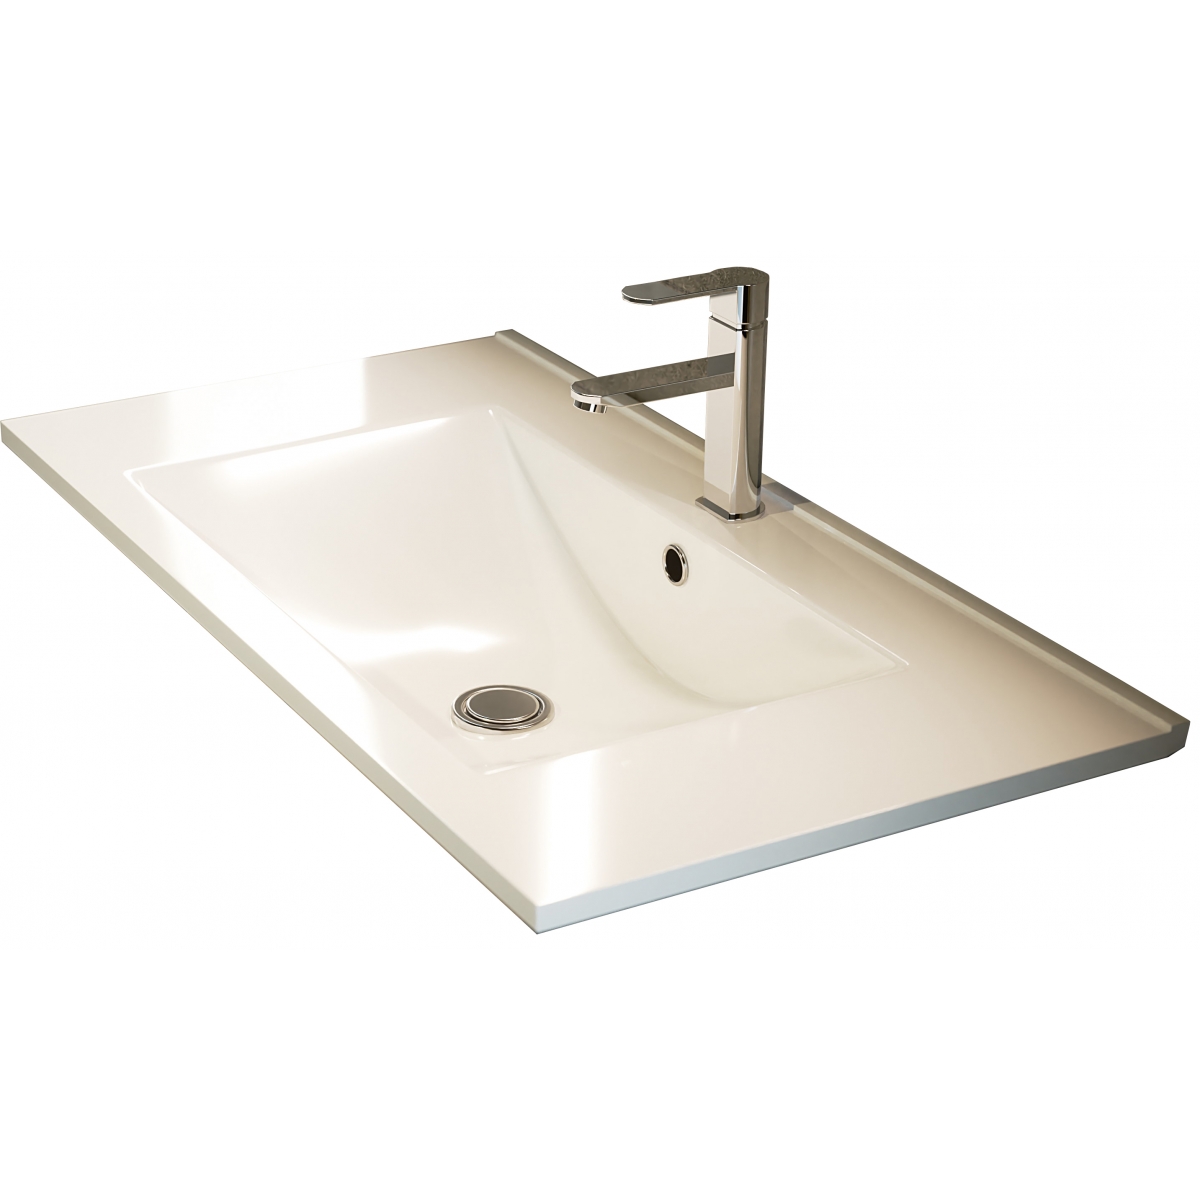 Fotos ambiente de Mueble de baño de suelo Bolton de 80 cm de ancho color blanco con lavabo integrado [54115]